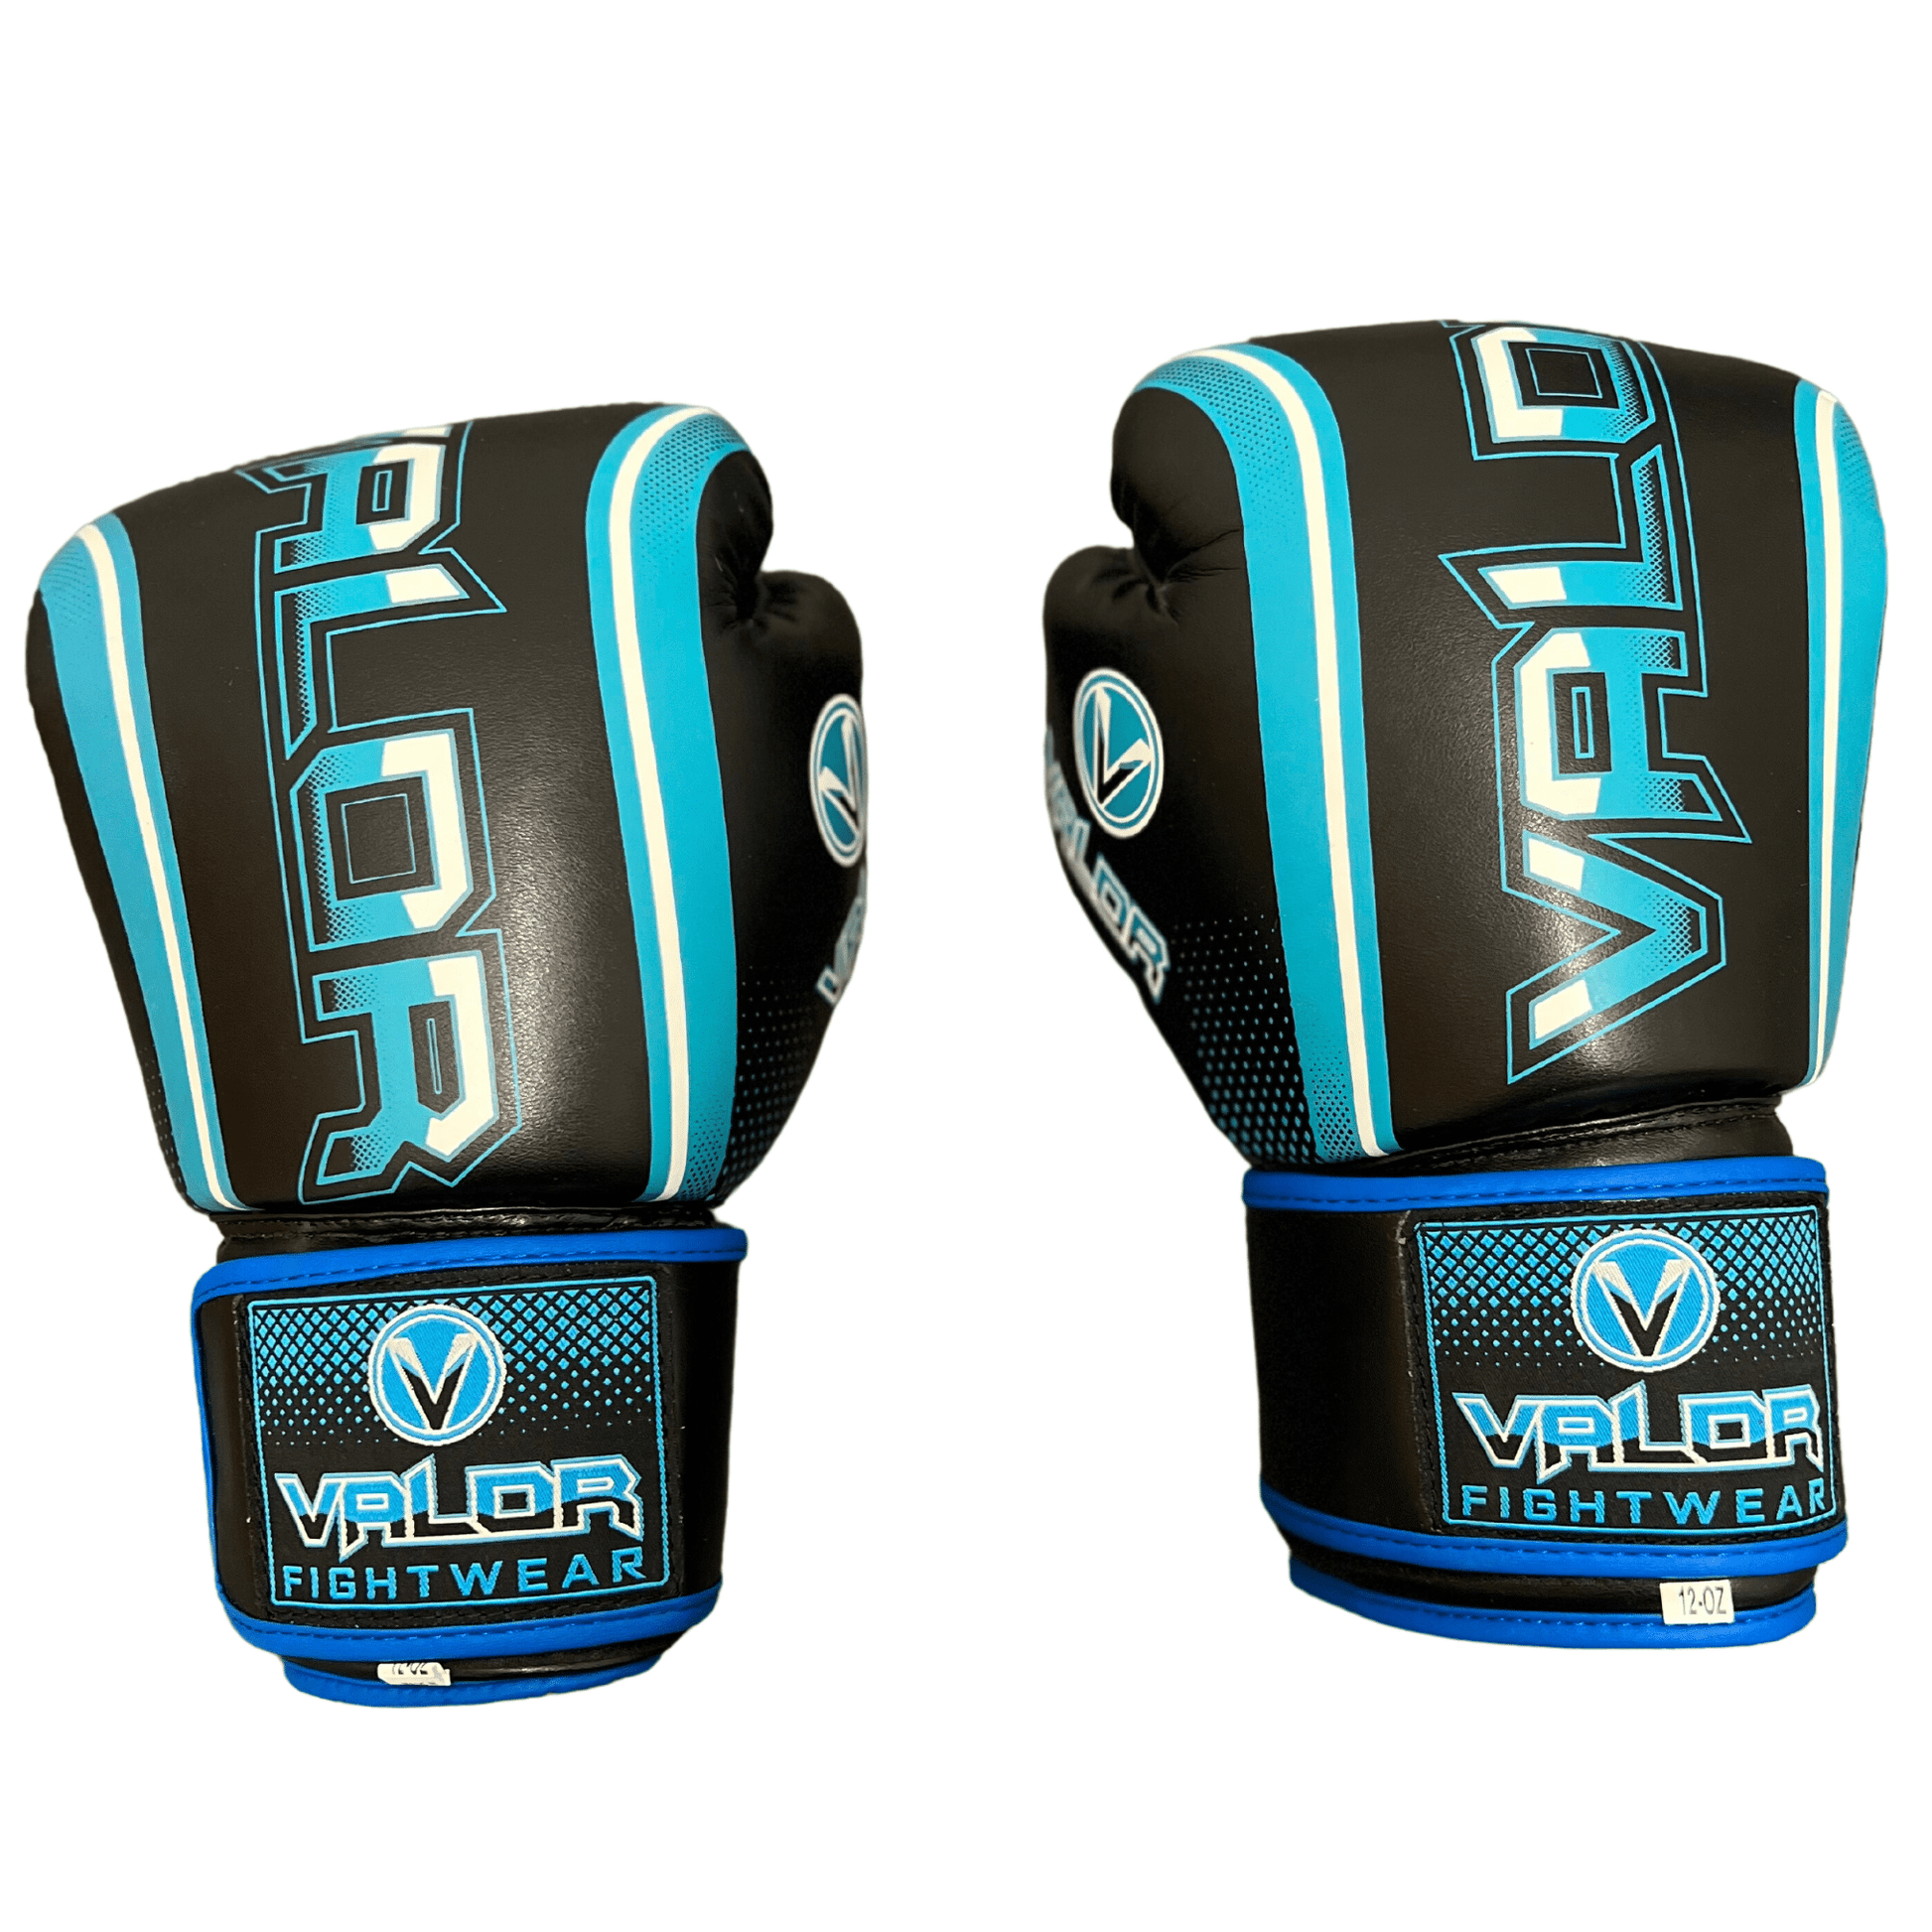 Fade 12oz Boxing Gloves - Black/Blue - Valor Fightwear